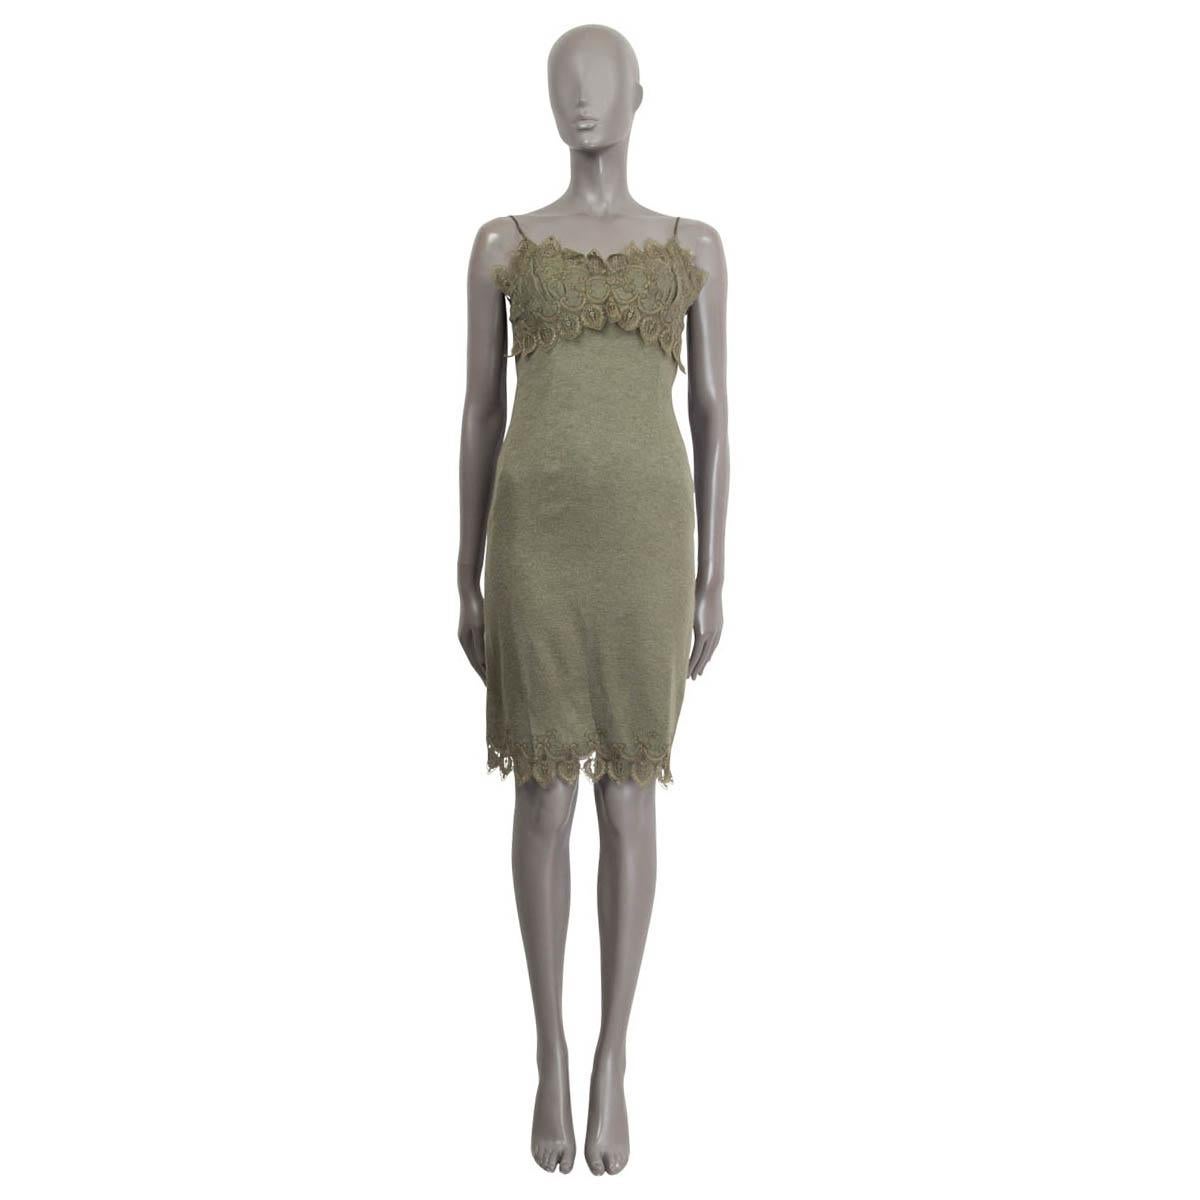 100% authentisch Ermanno Scervino ärmellosen Slip Kleid in olivgrüner Wolle (angenommen, weil Tag fehlt) Kleid. Verziert mit olivgrüner Spitze im Brustbereich und am Saum. Wird mit einem verdeckten Reißverschluss auf der Rückseite geöffnet. Mit